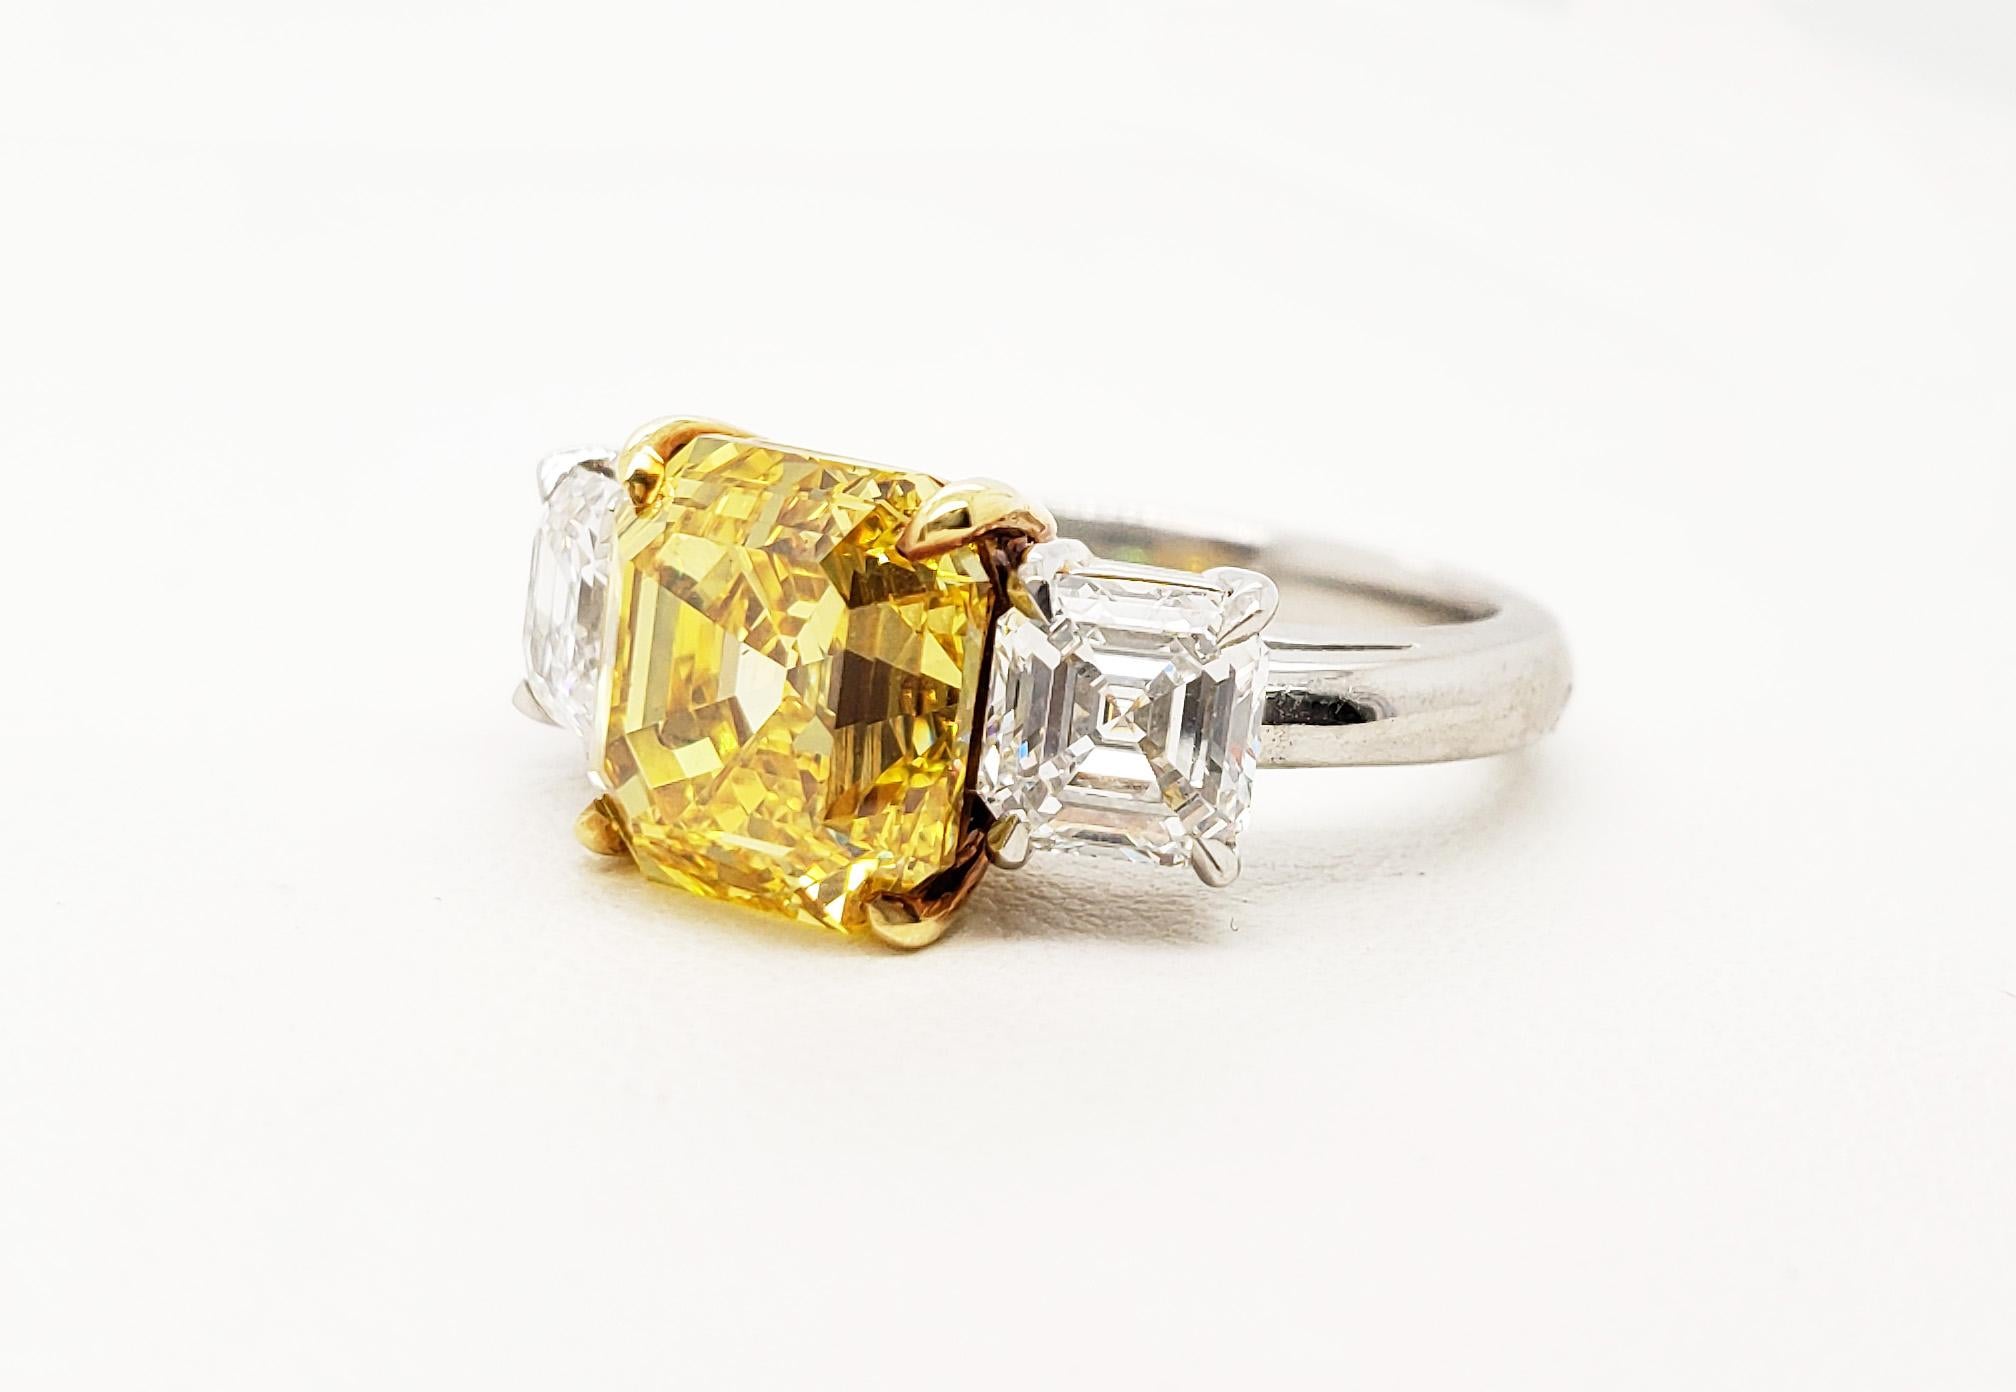 4 carat yellow diamond price